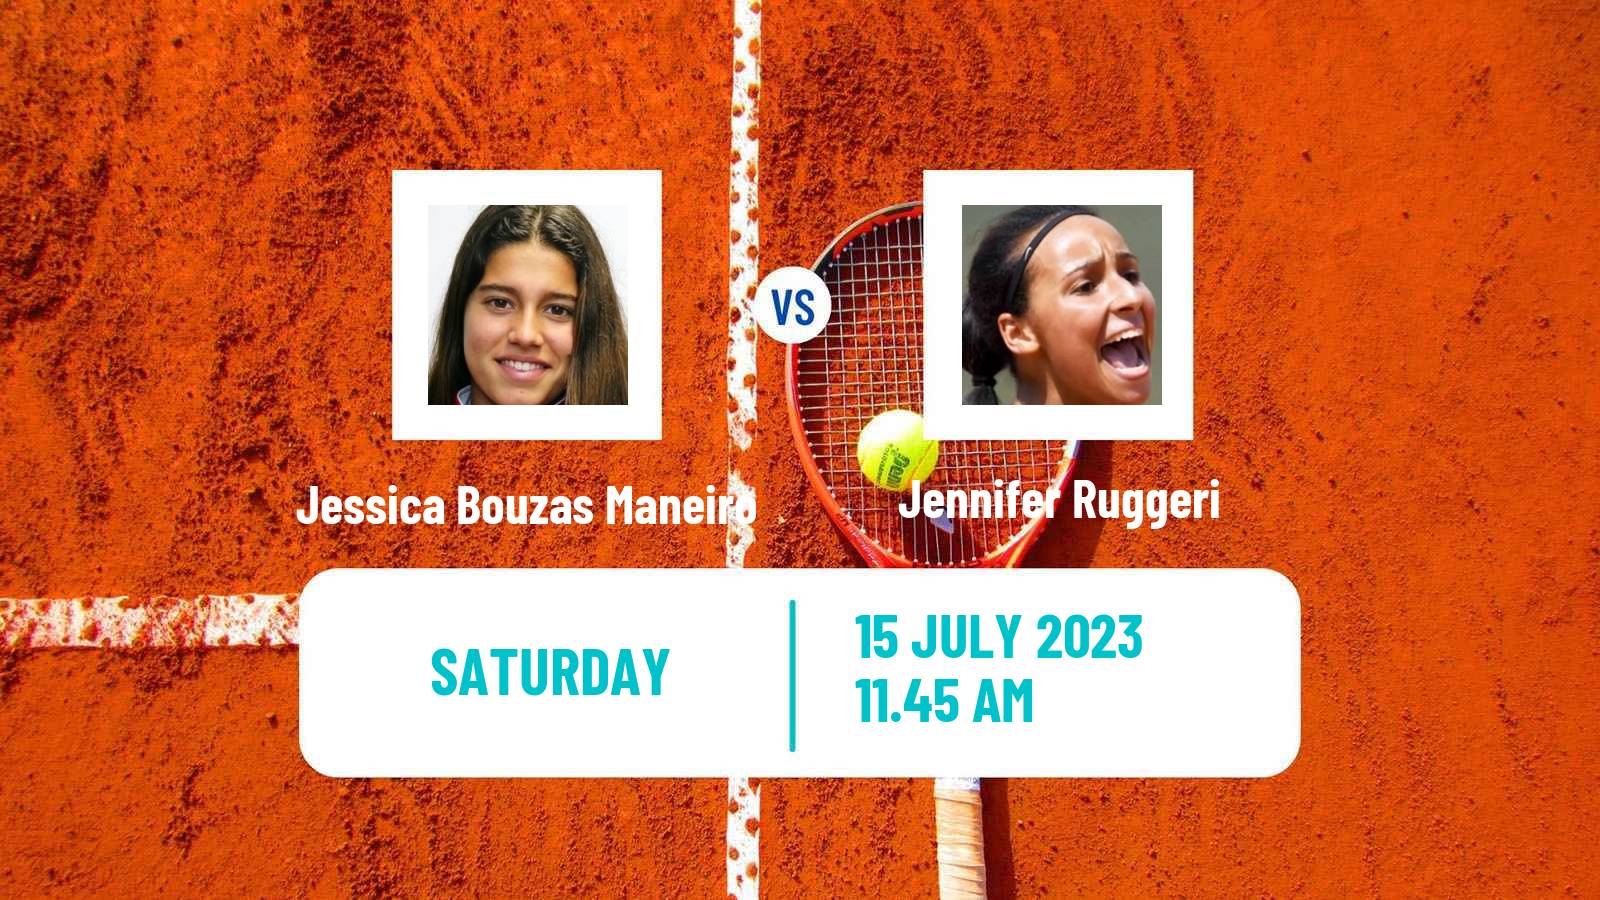 Tennis ITF W60 Rome 2 Women Jessica Bouzas Maneiro - Jennifer Ruggeri